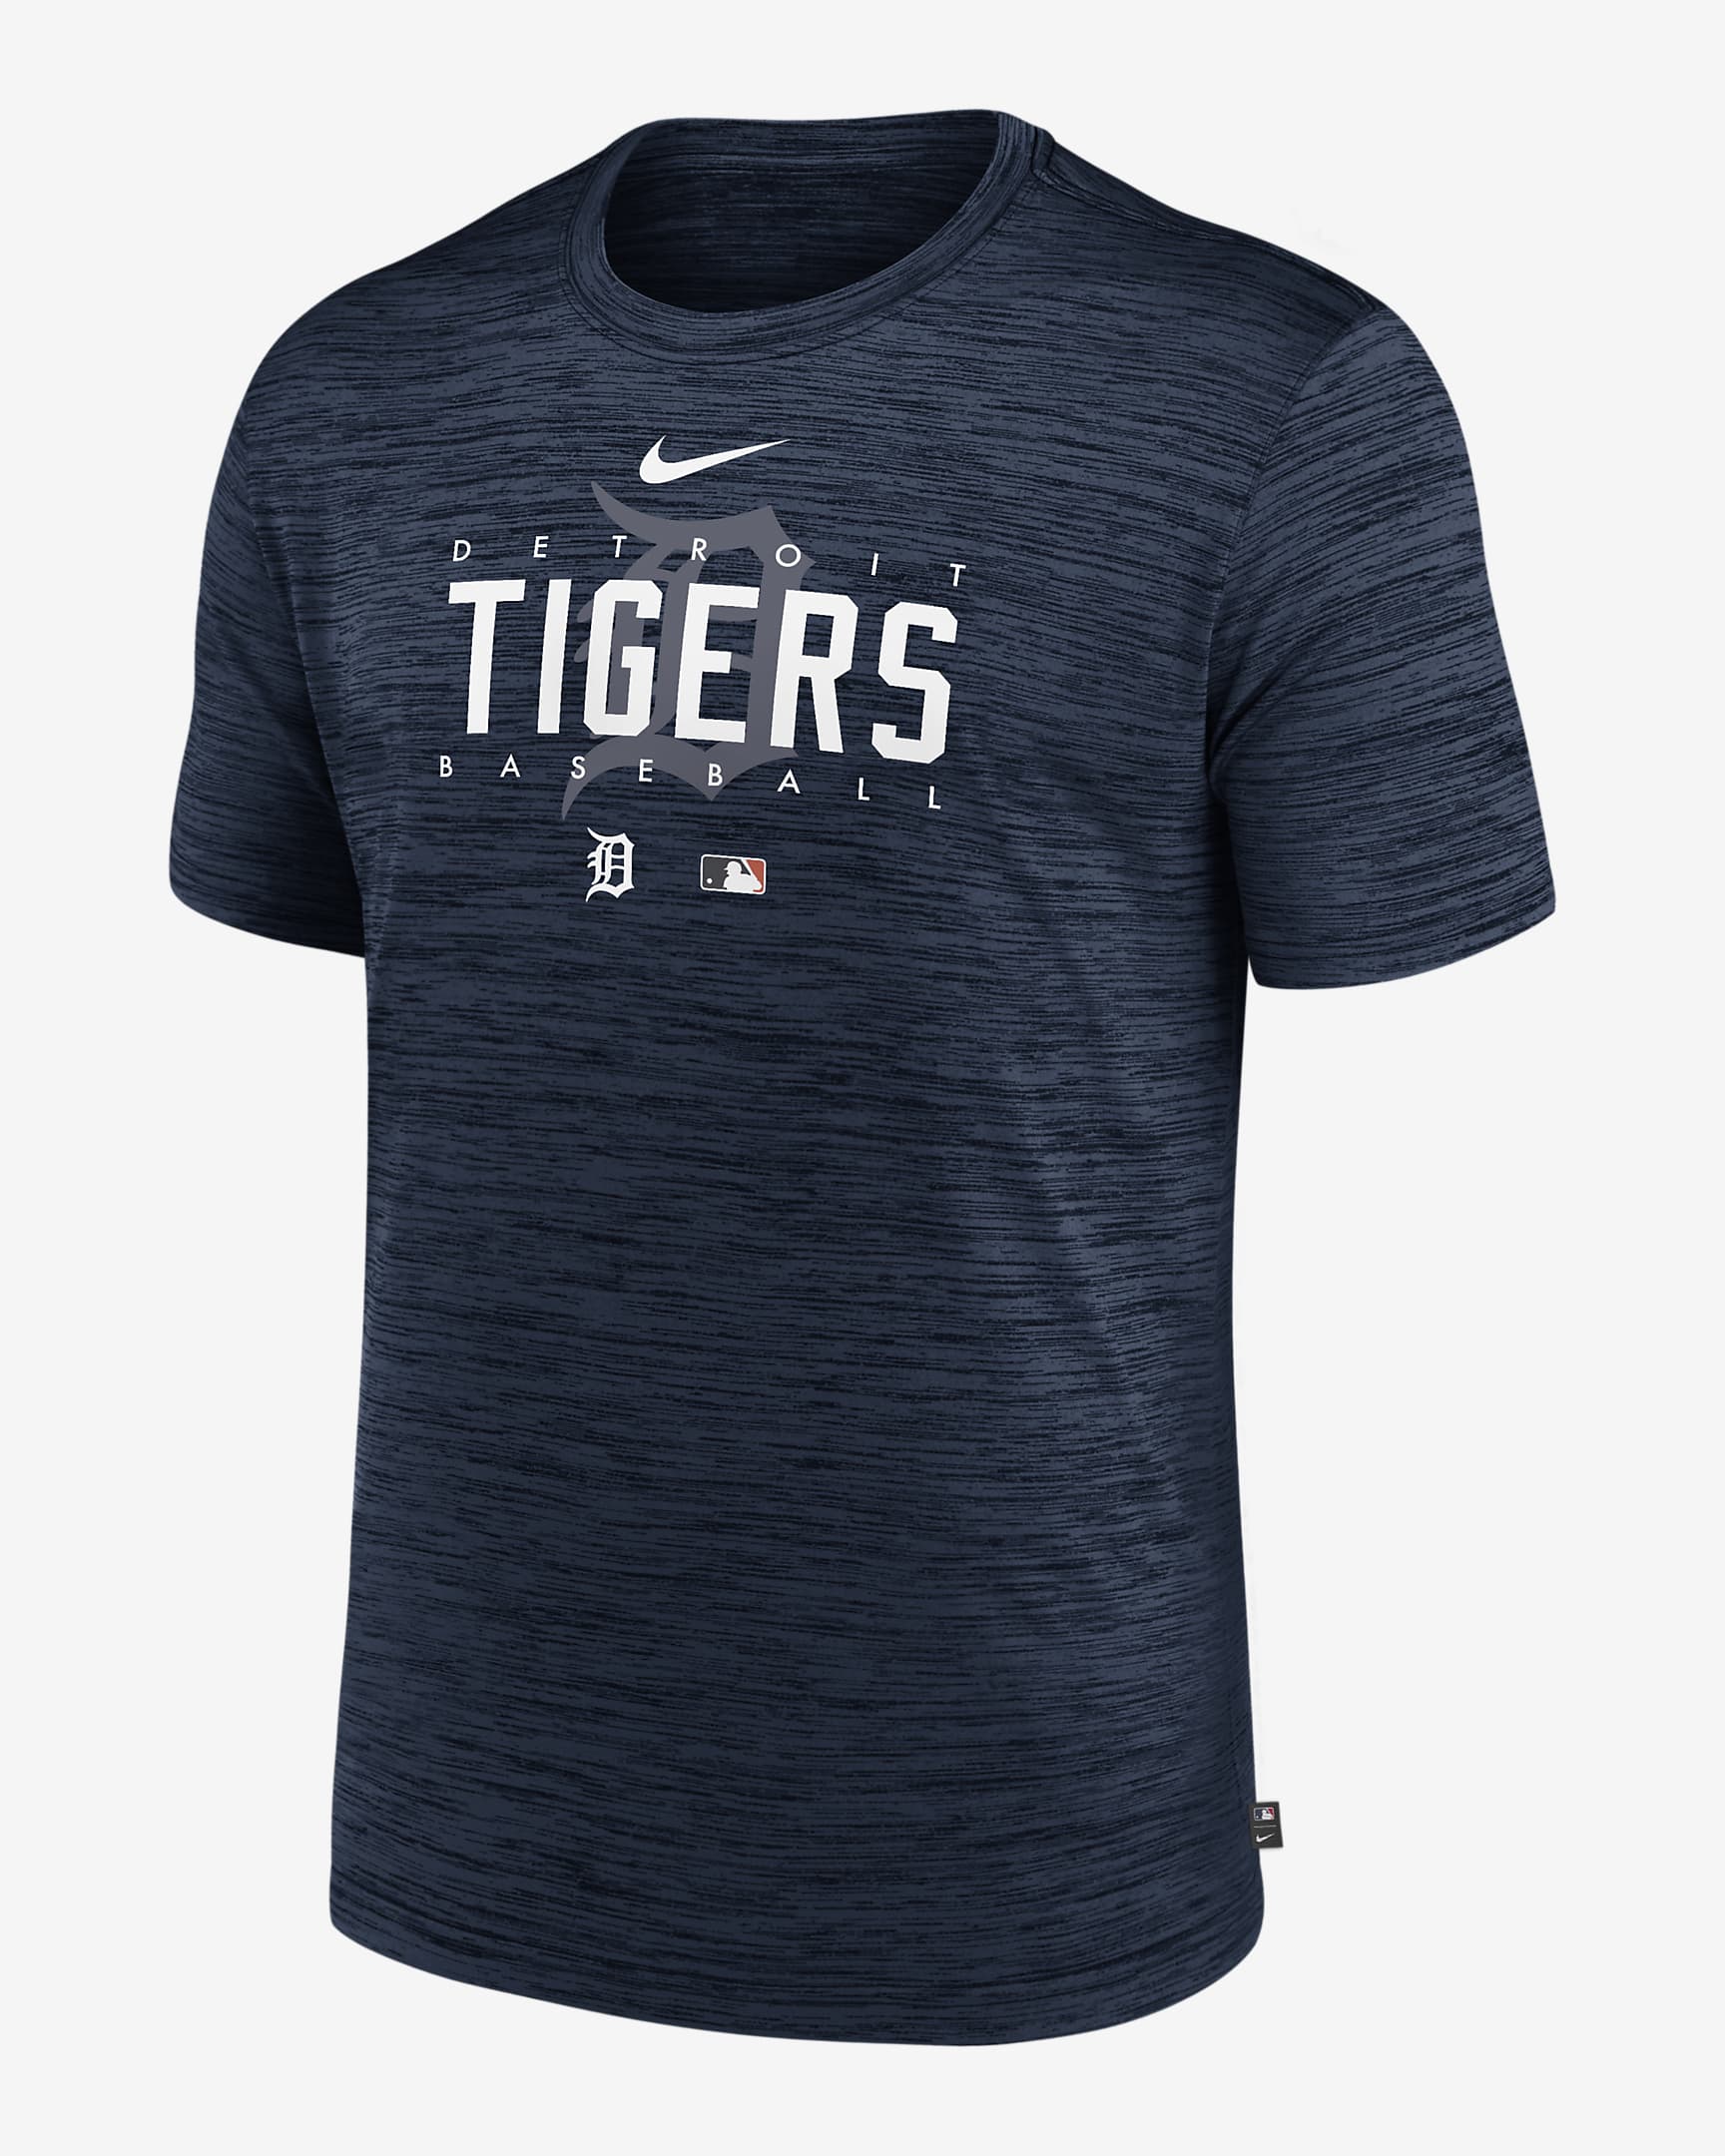 Nike Dri-FIT Velocity Practice (MLB Detroit Tigers) Men's T-Shirt. Nike.com